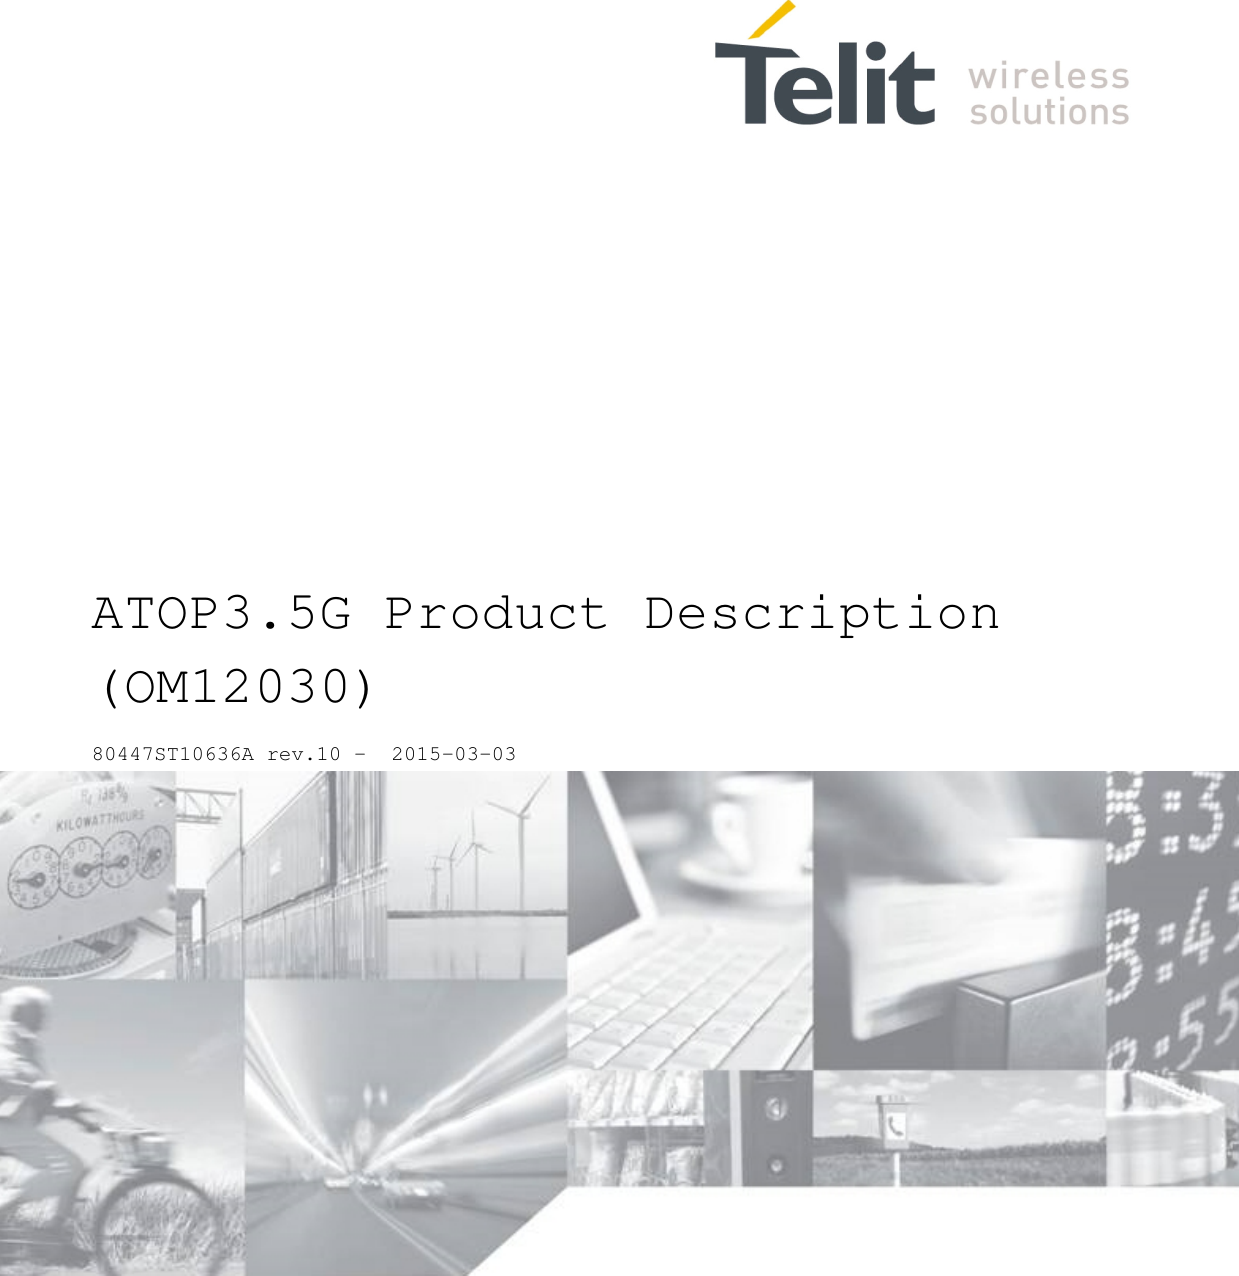                      ATOP3.5G Product Description (OM12030) 80447ST10636A rev.10 -  2015-03-03 